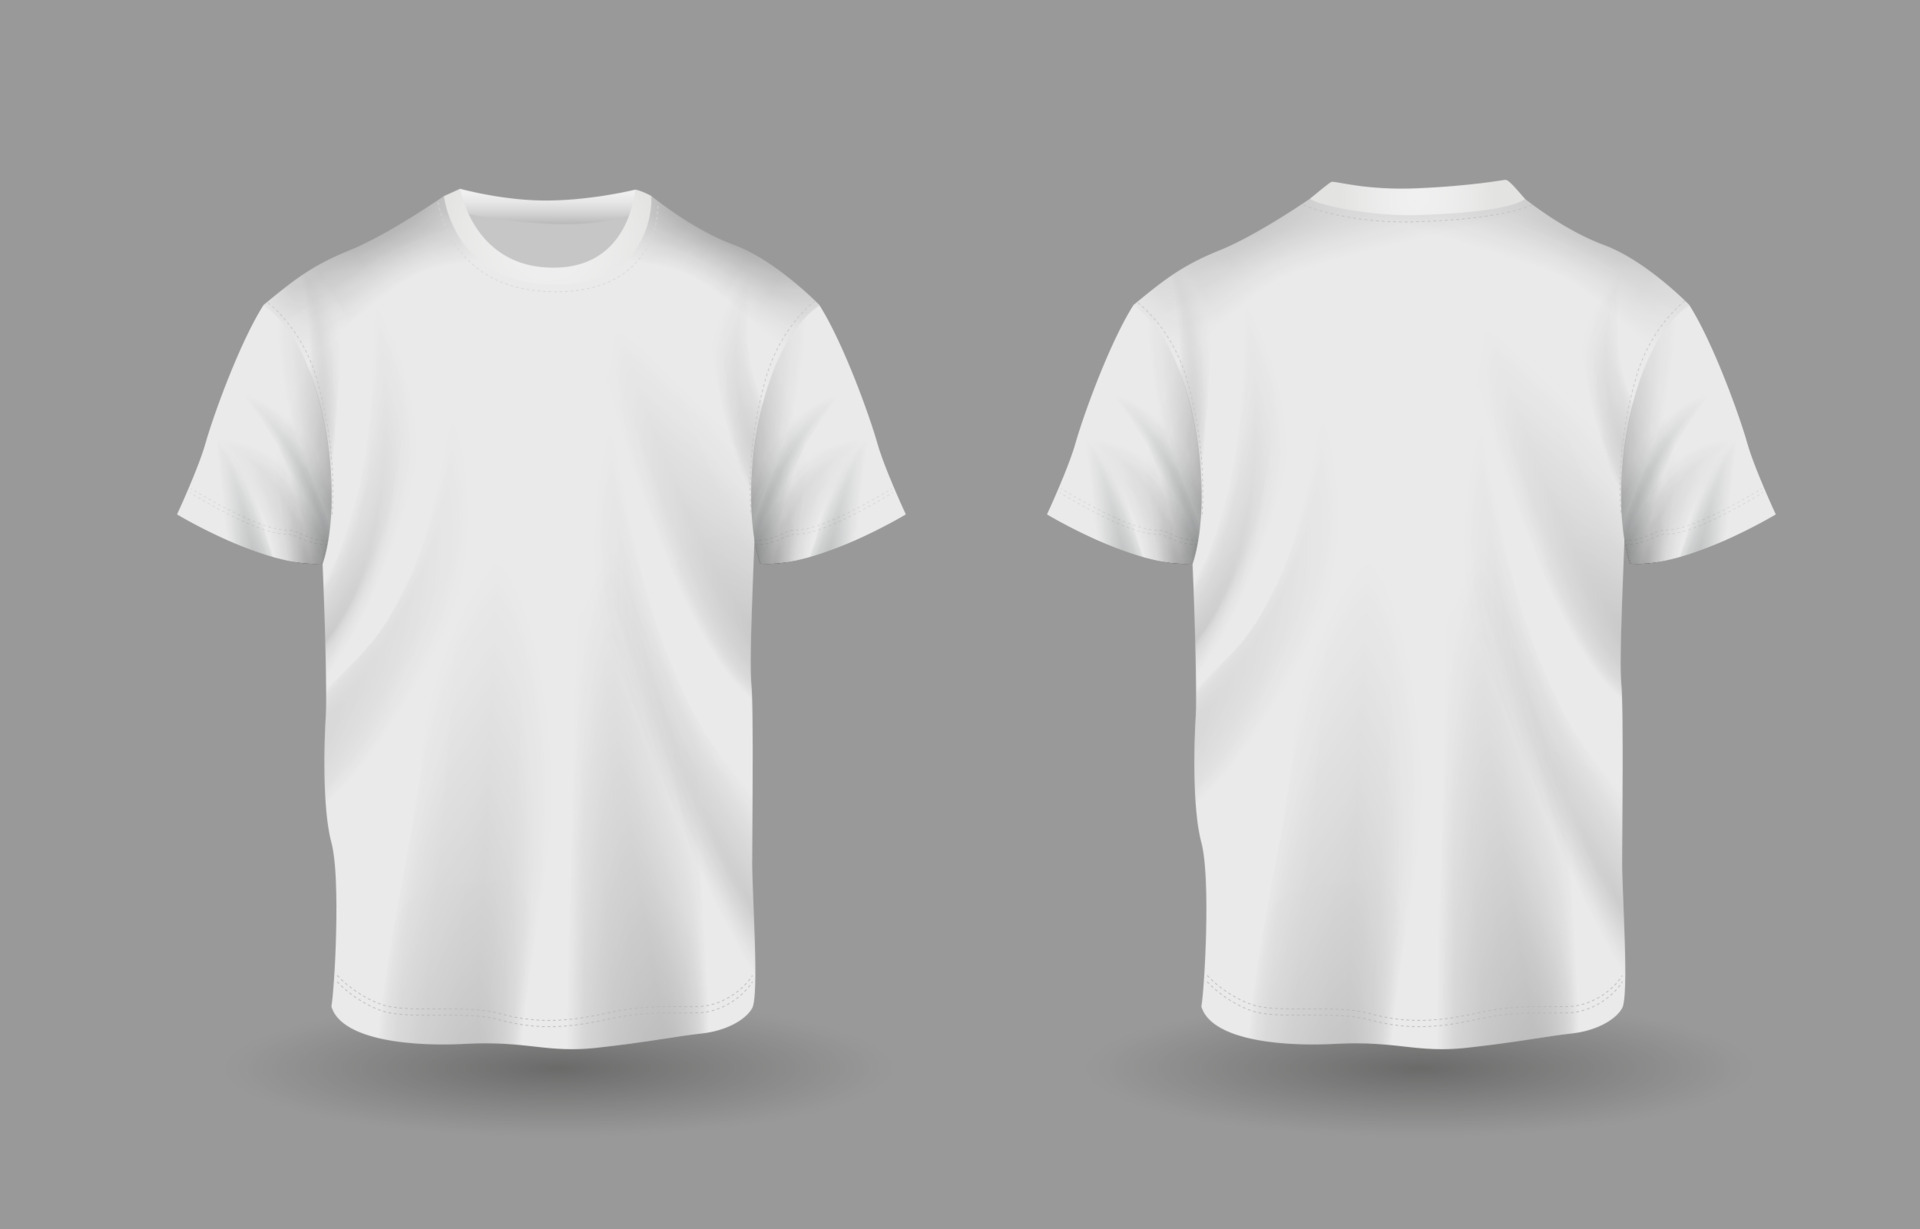 3D White T Shirt Mock Up Template 20535873 Vector Art At Vecteezy